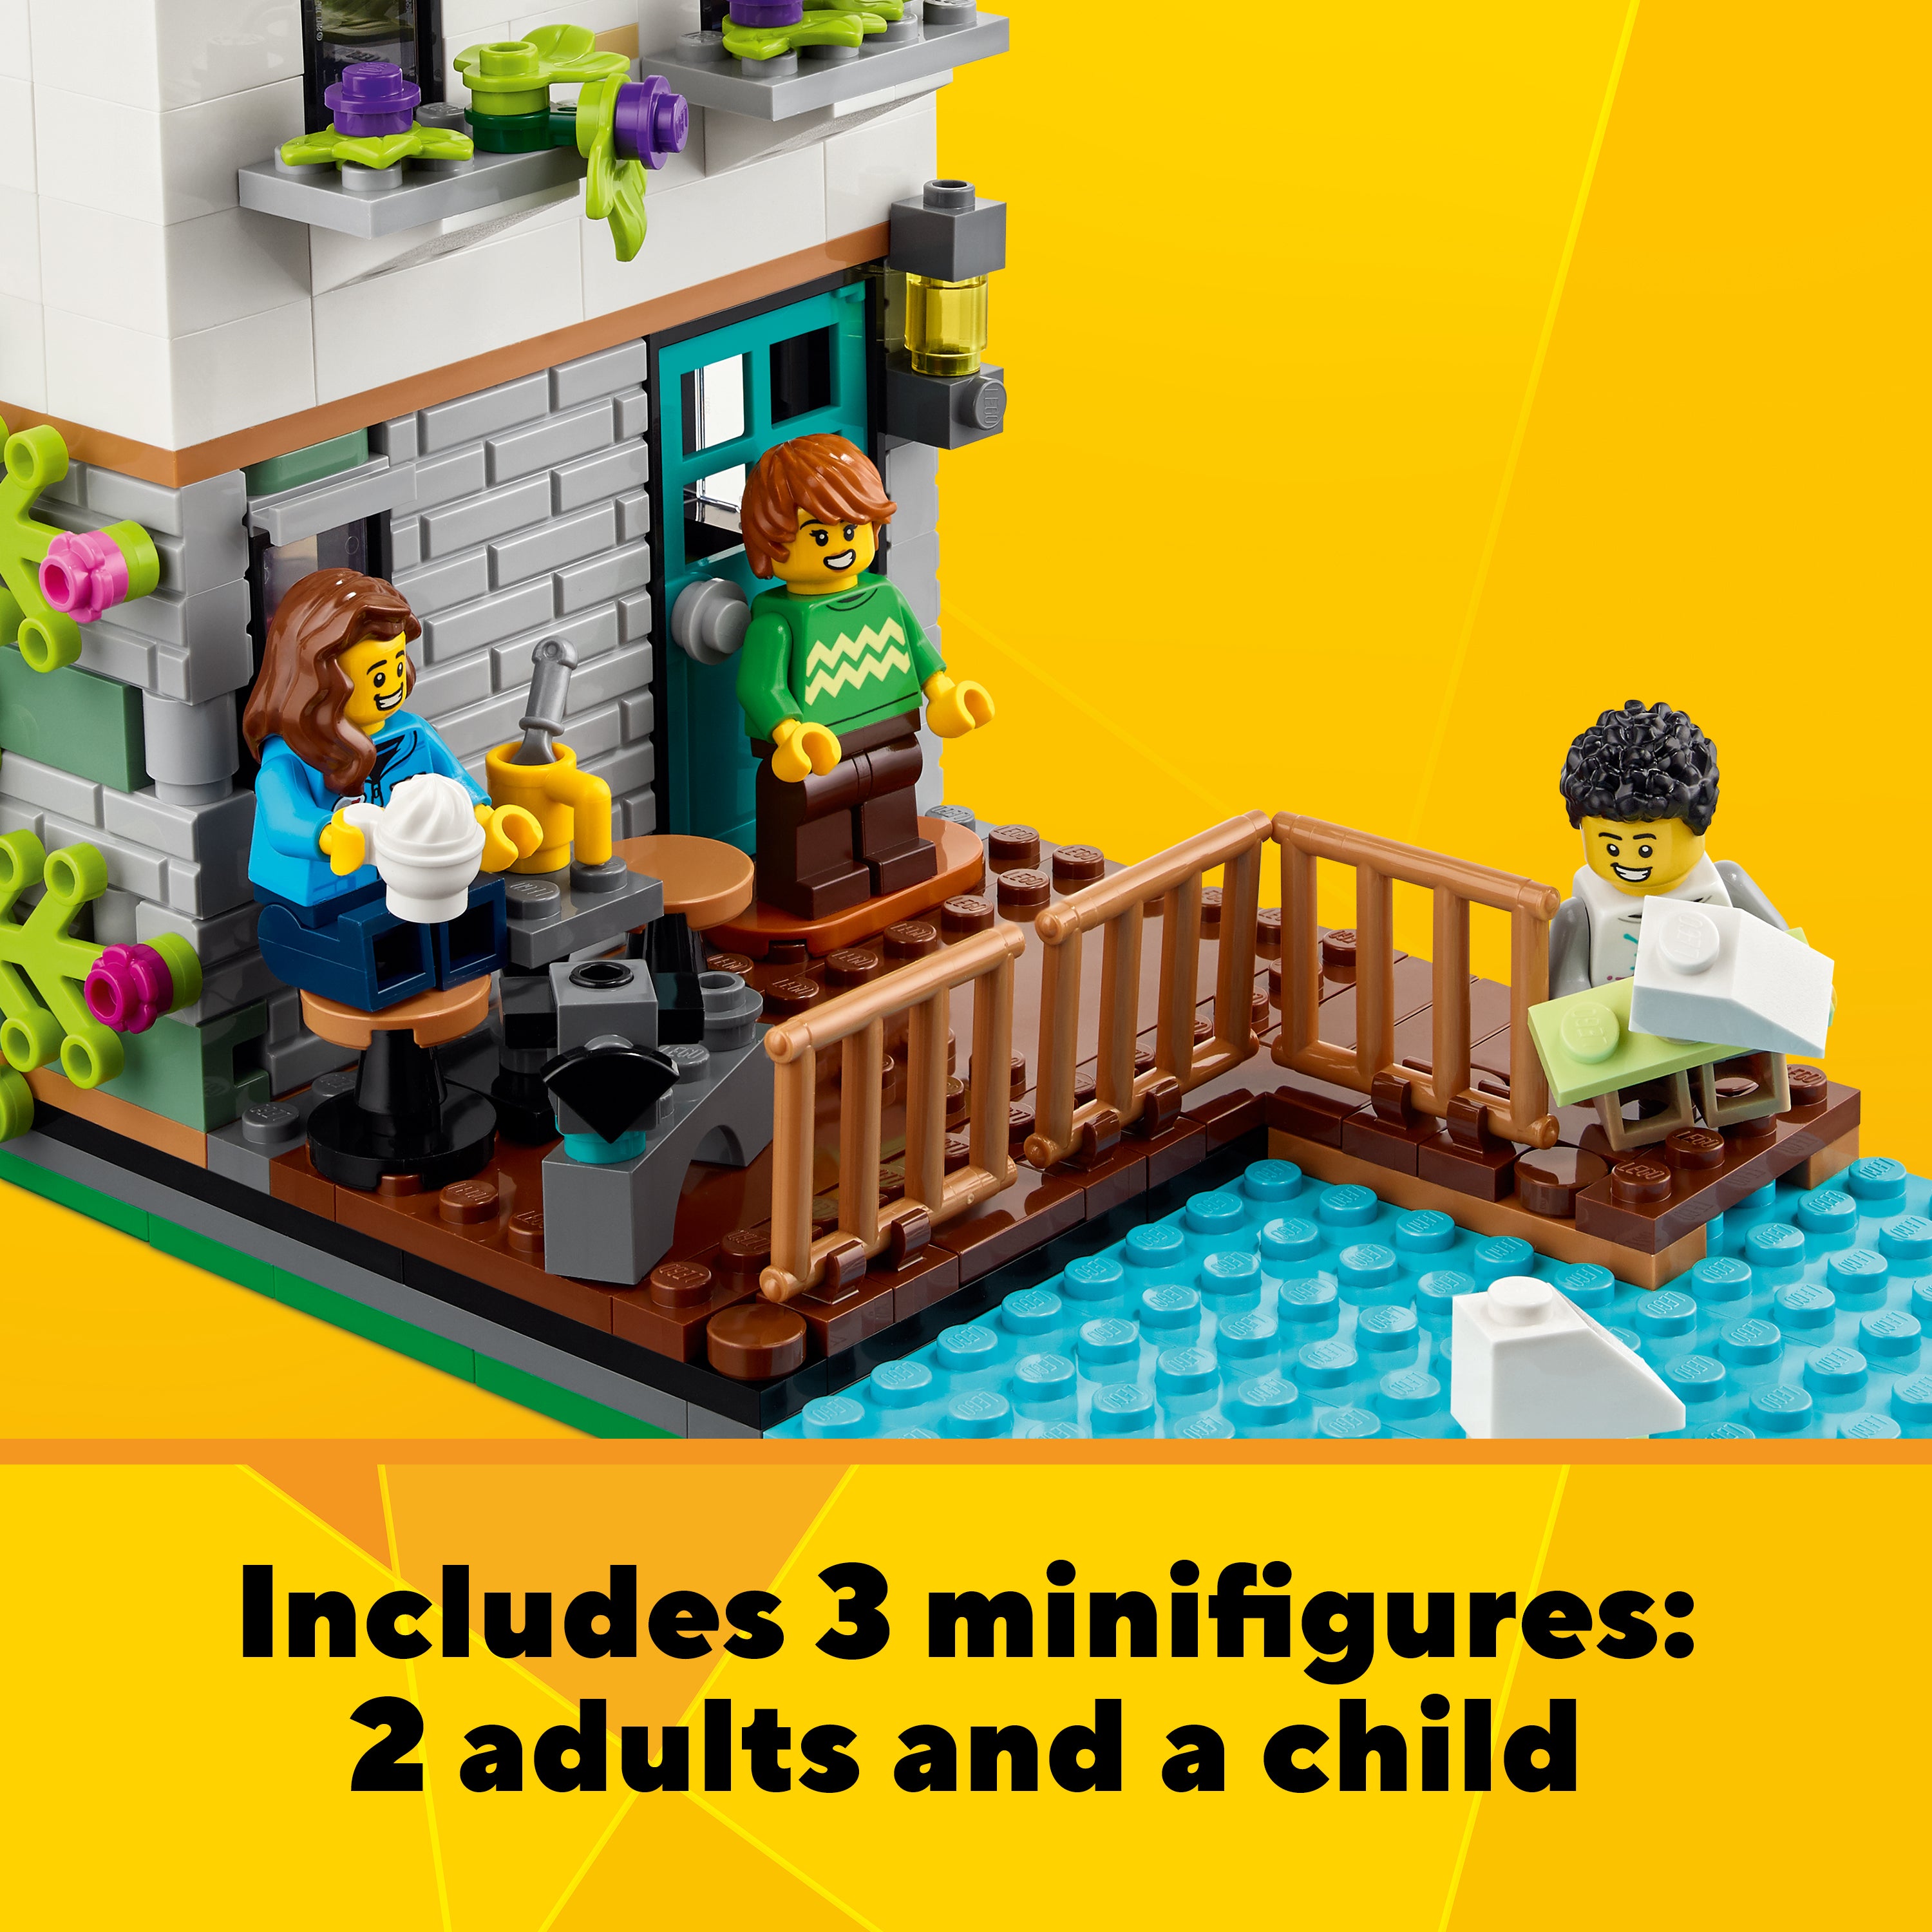 Lego 31139 Cozy House